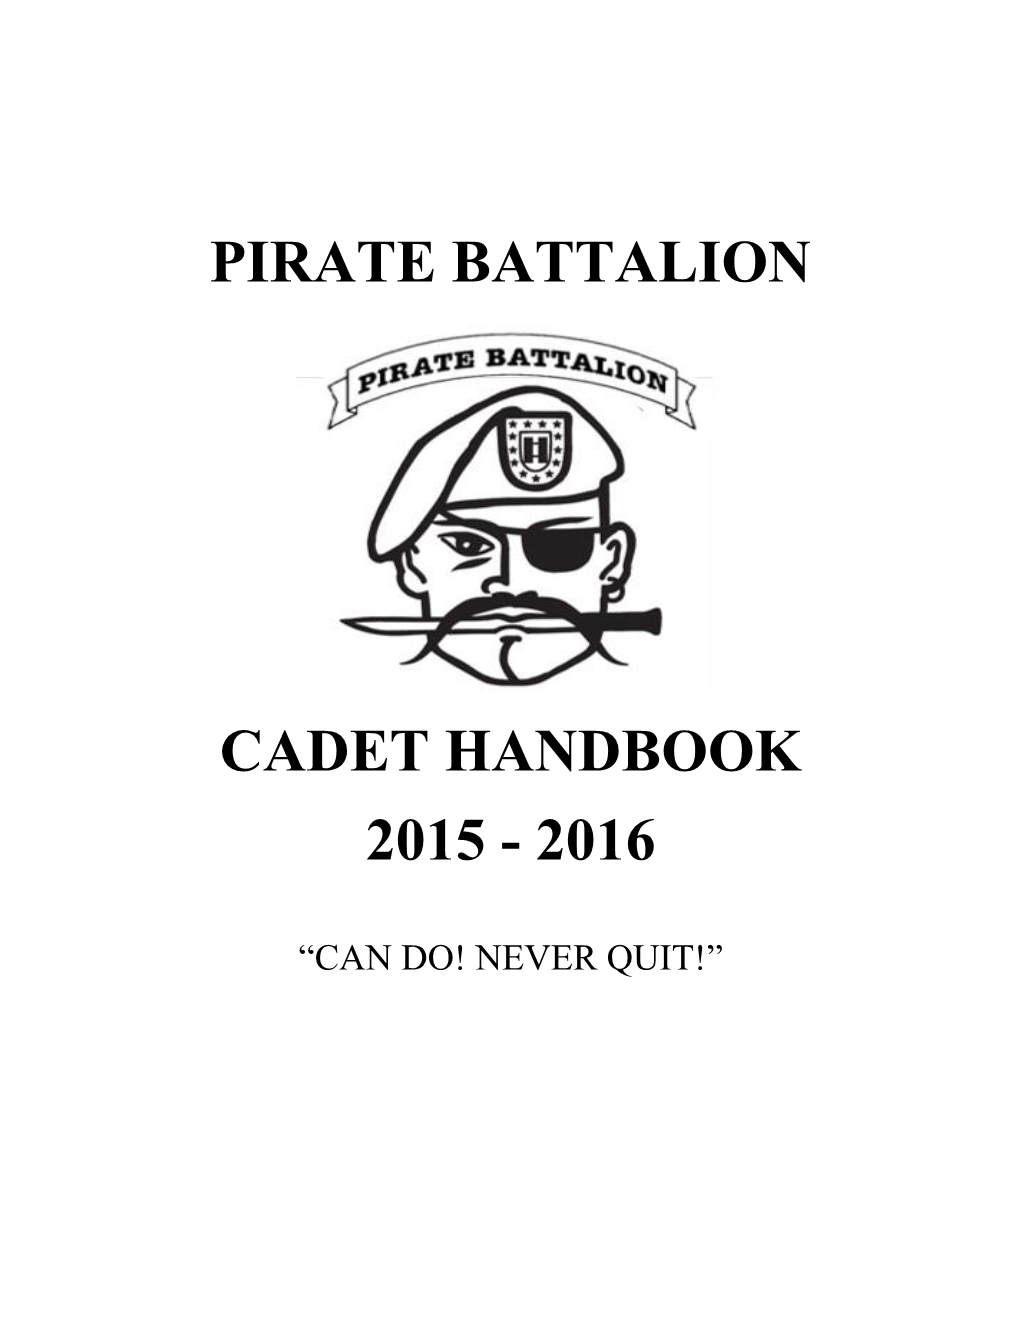 Pirate Battalion Cadet Handbook 2015